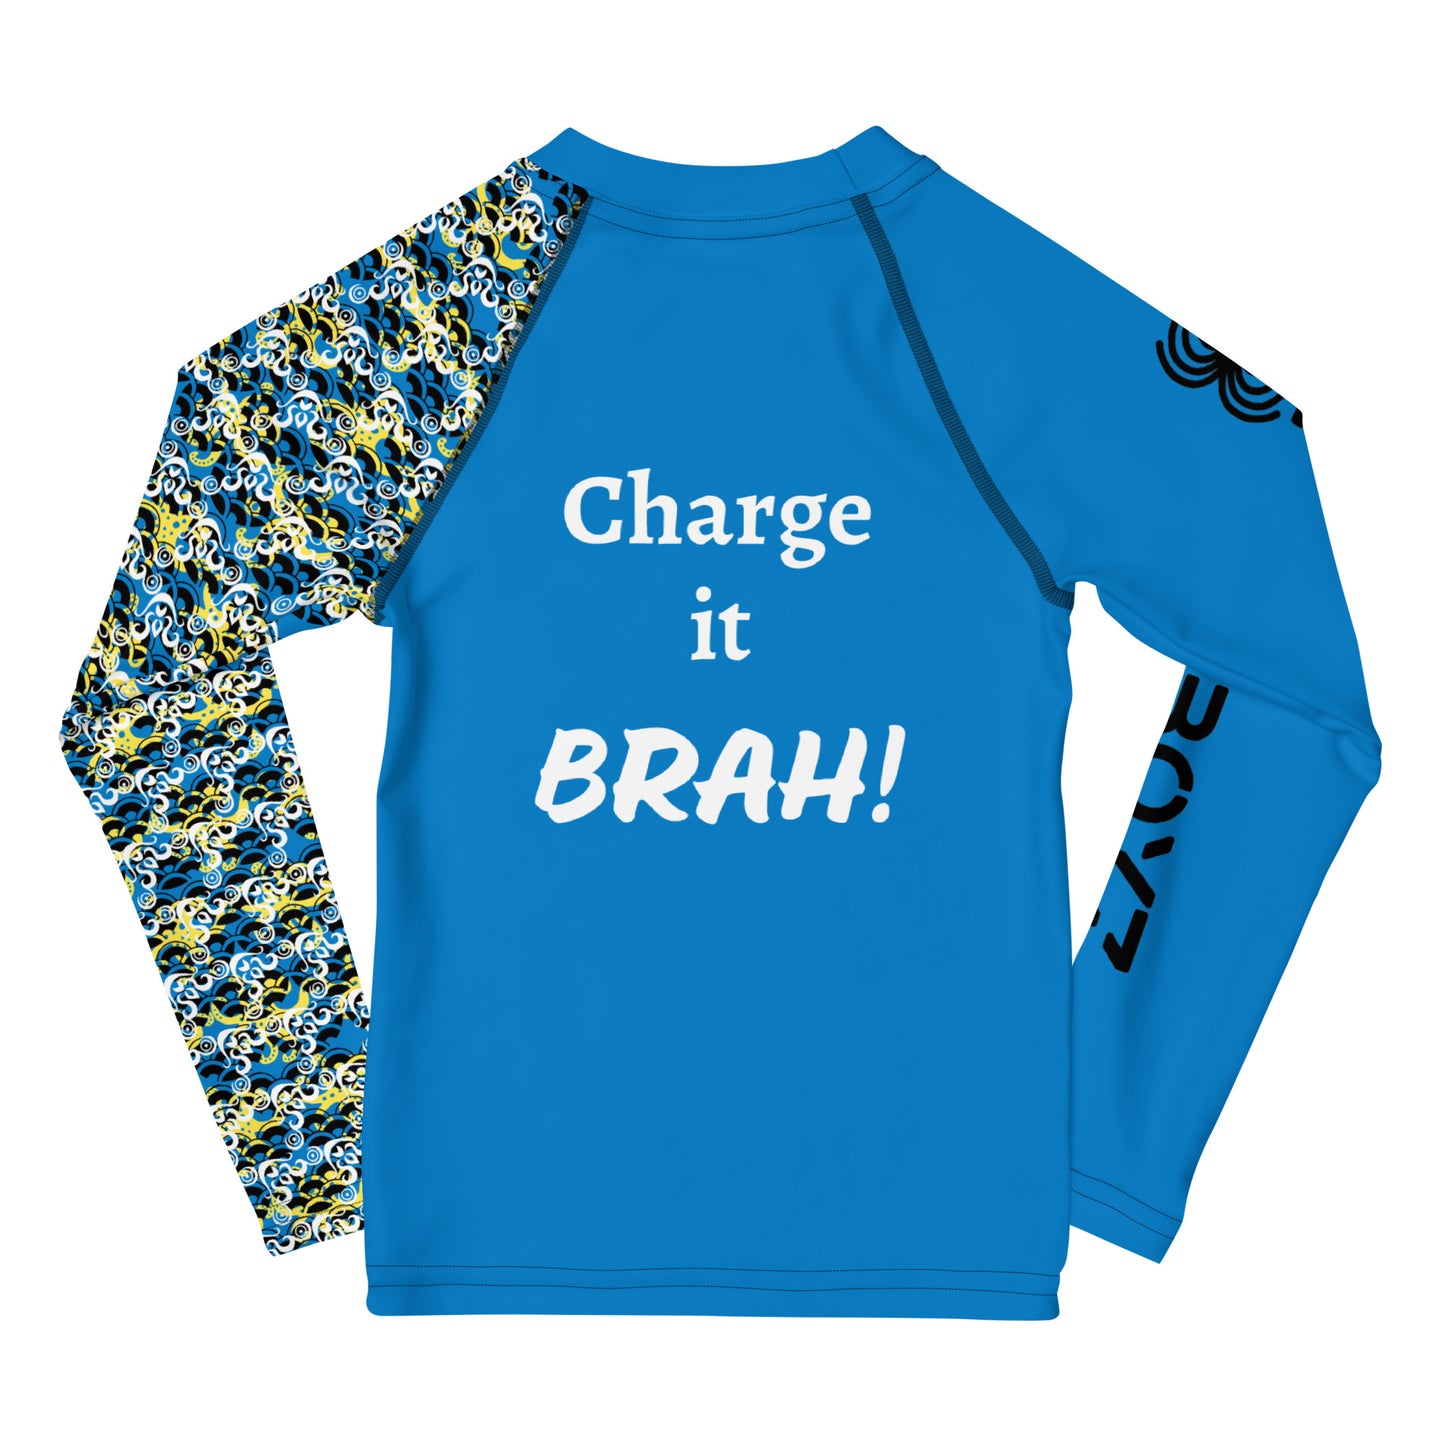 "Charge it BRAH" Kids Rash Guard